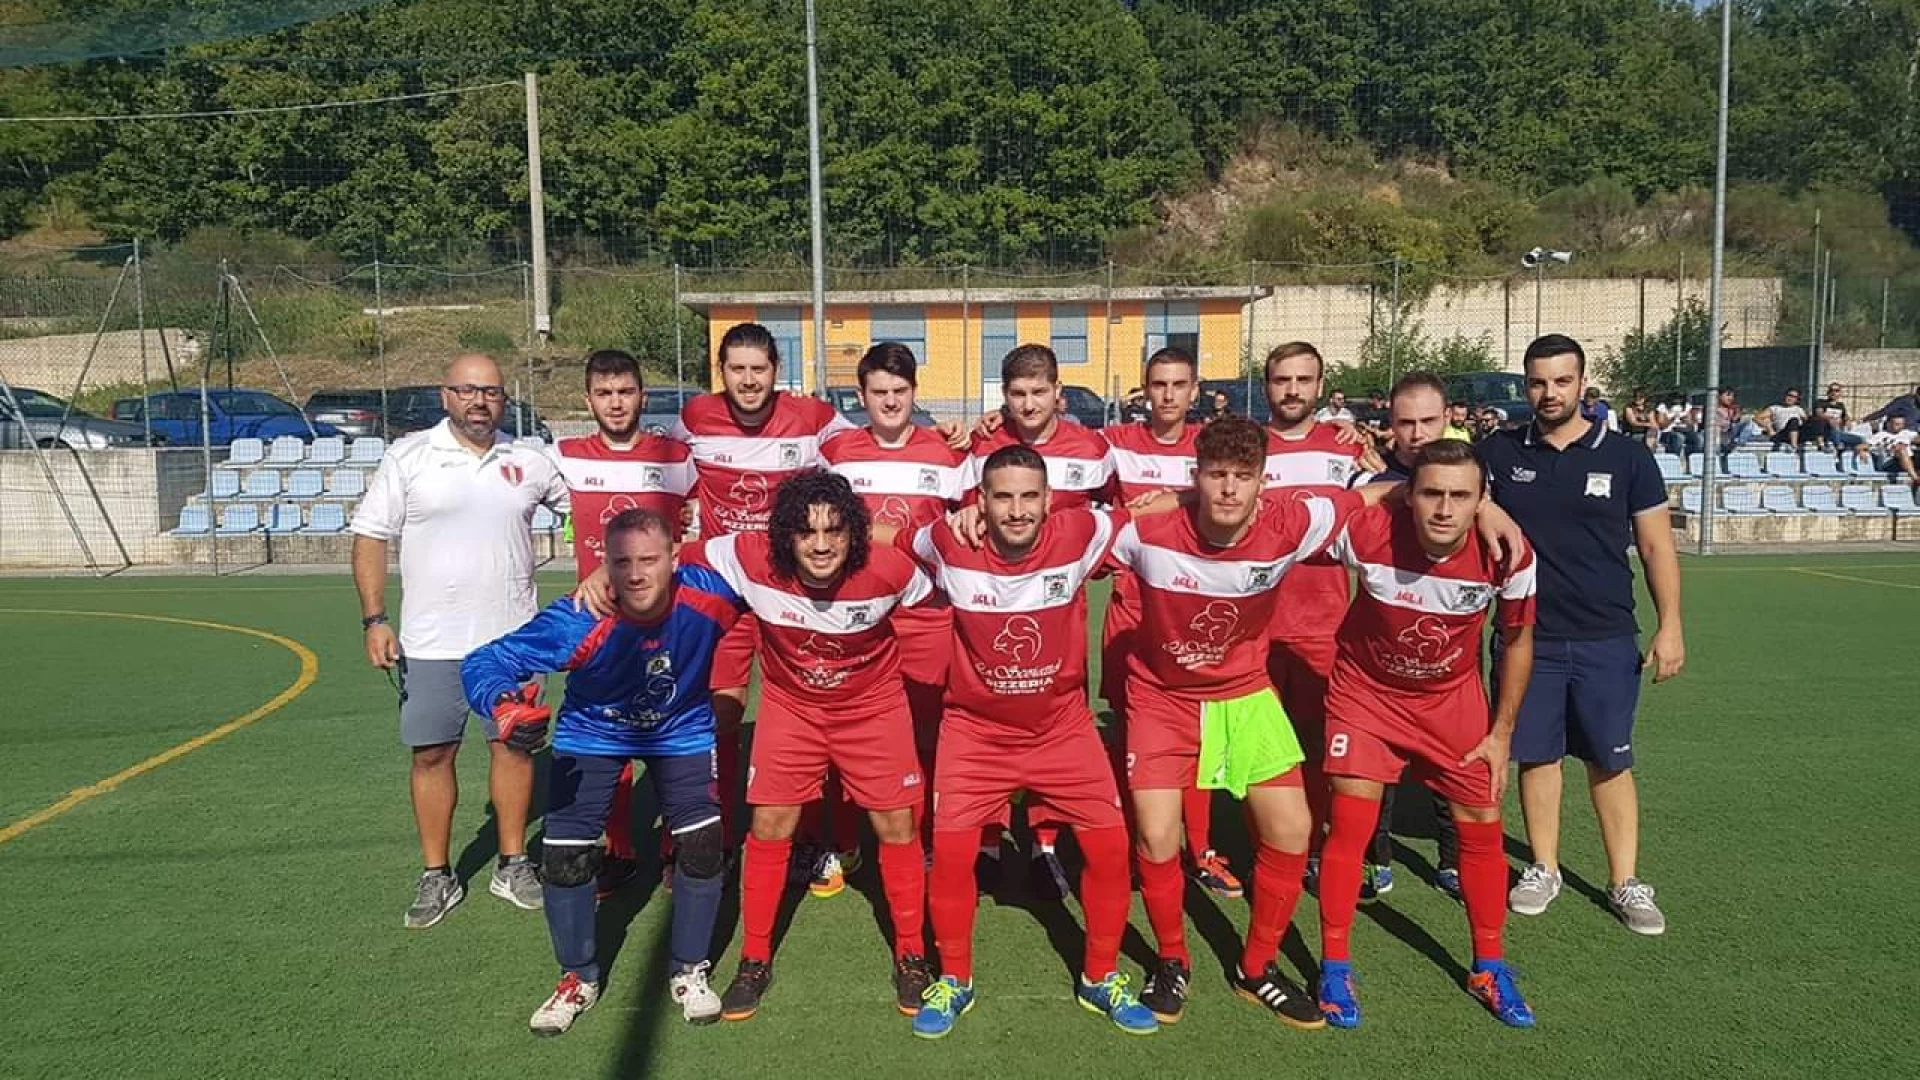 Calcio a 5 , esordio amaro in coppa per la Futsal Colli a Volturno. Sconfitta con il Frosolone